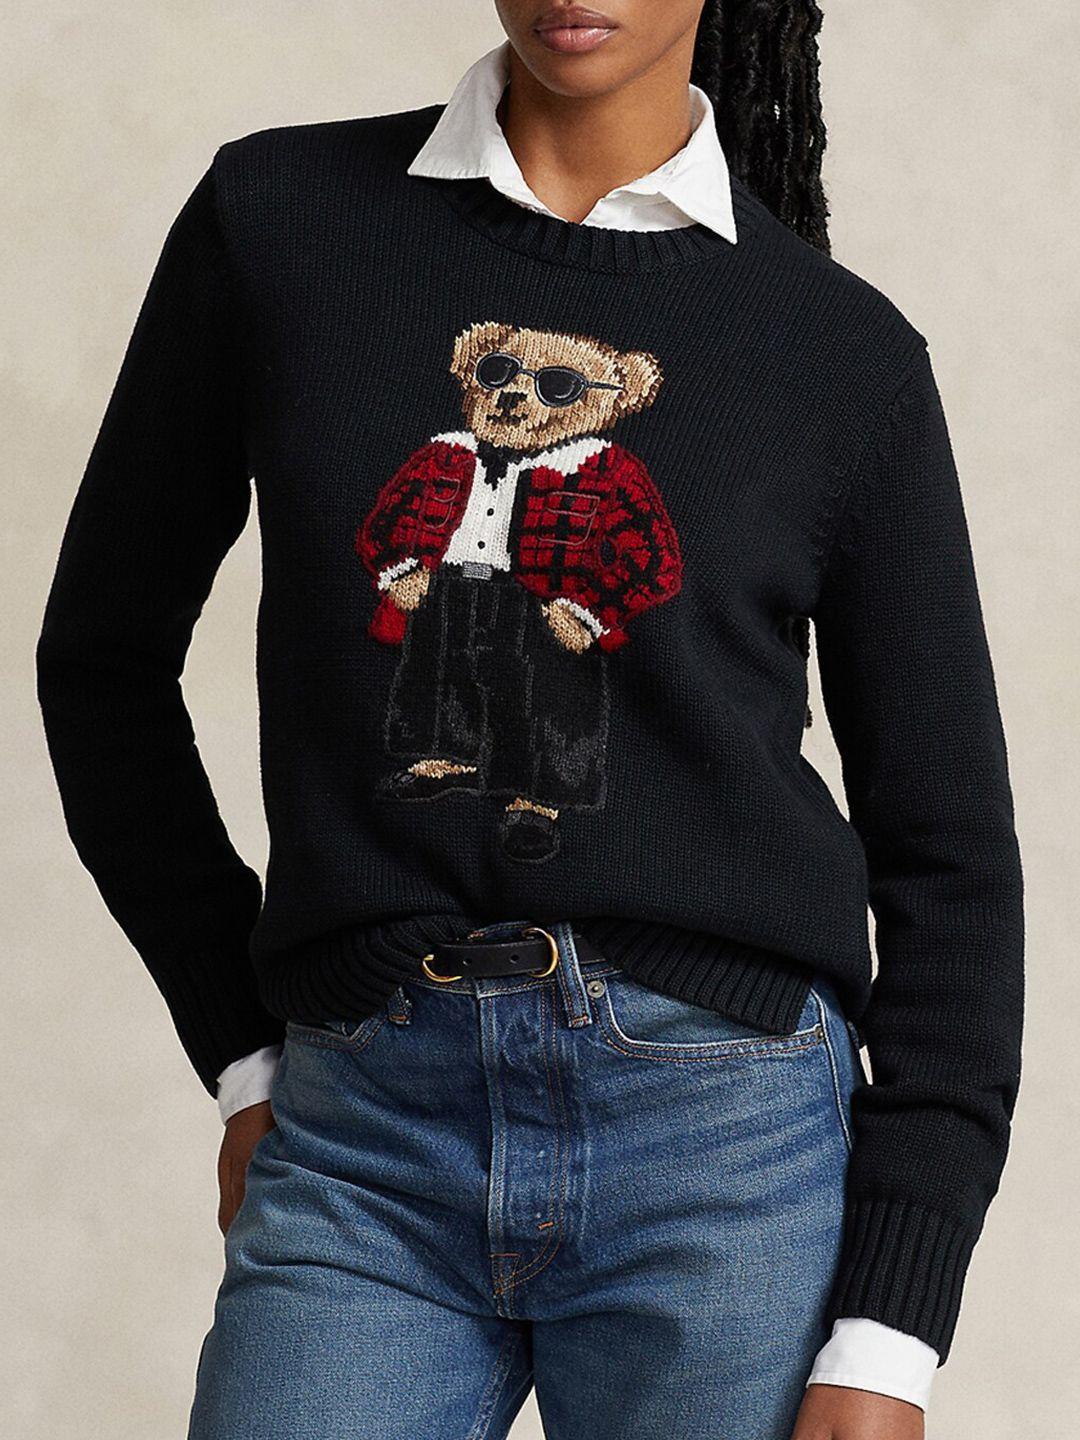 polo ralph lauren graphic self design pure cotton pullover sweater